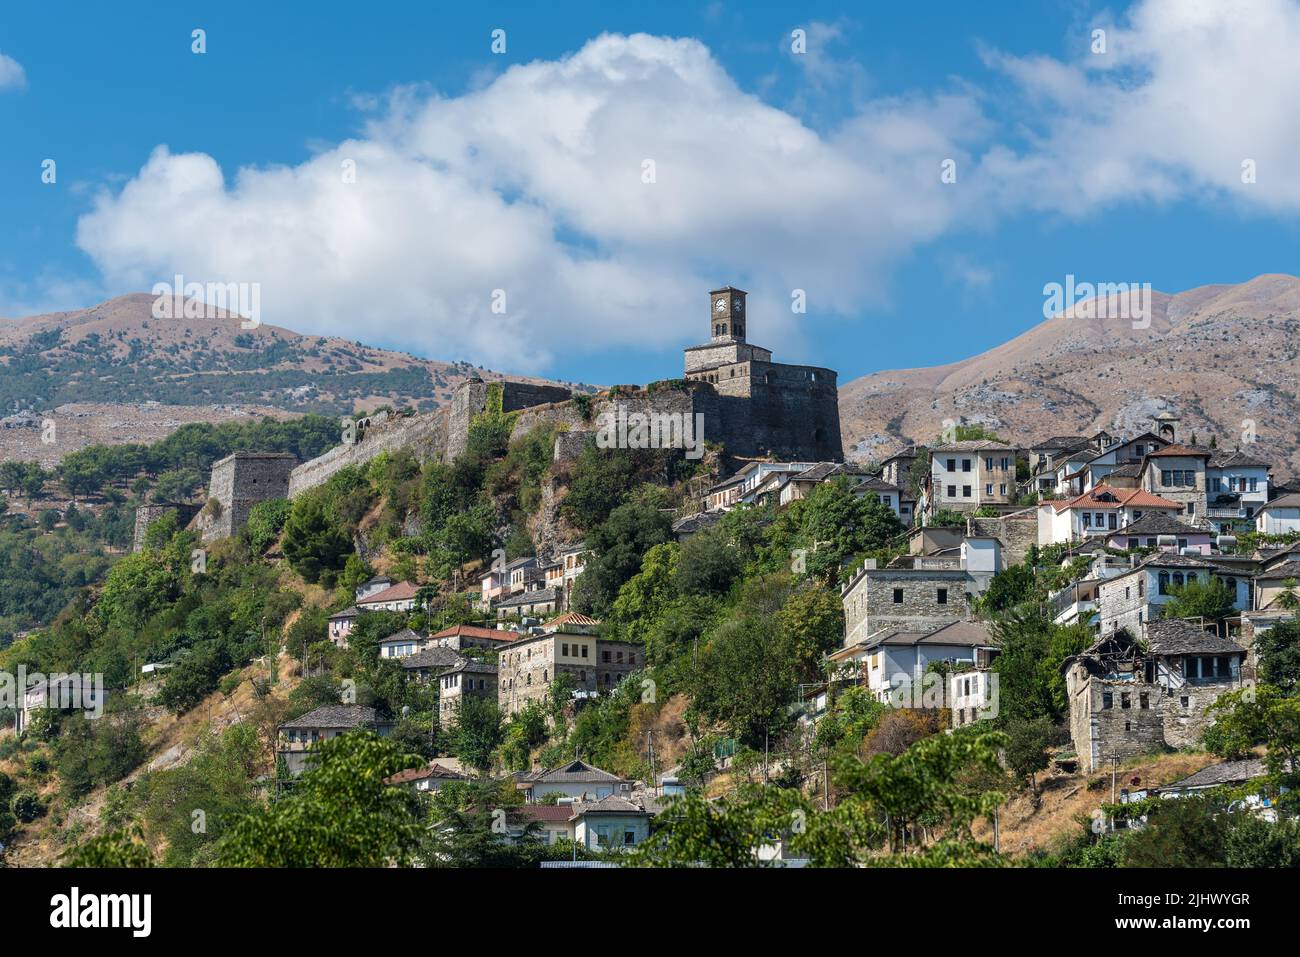 Gjirokaster, Albania - 10 de septiembre de 2022: Paisaje con un castillo de Gjirokaster y la torre del reloj con casas otomanas abajo en Gjirokaster, Albania. Foto de stock